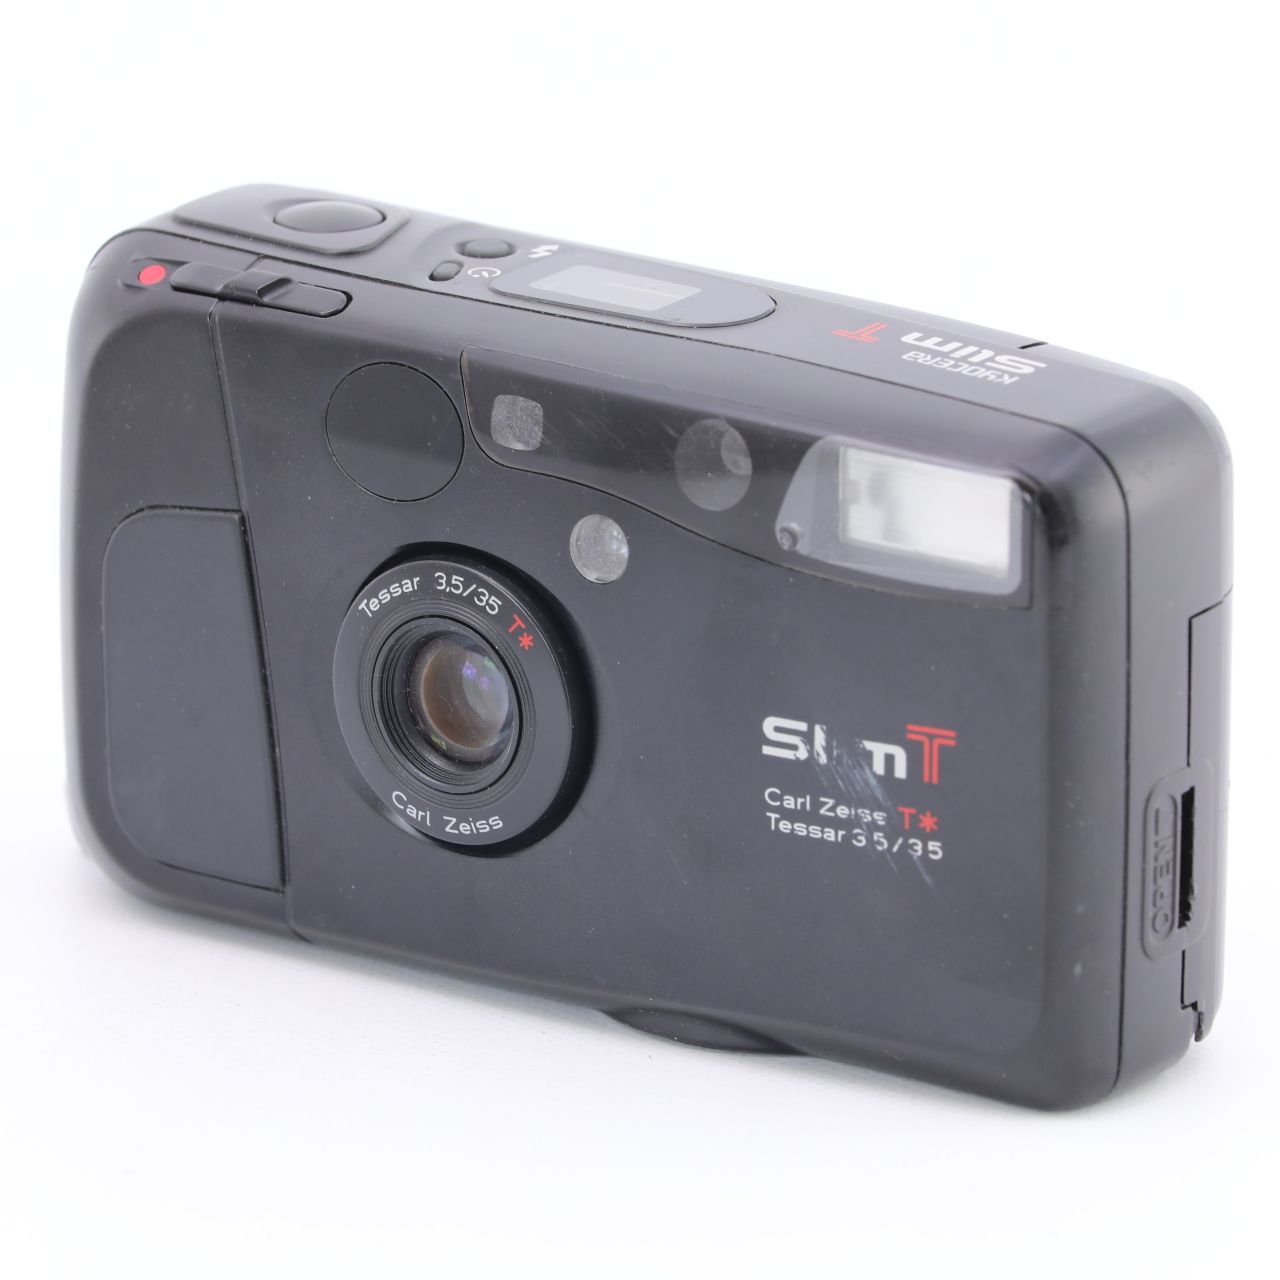 京セラ Kyocera Slim T 35mm フィルムコンパクトカメラ-